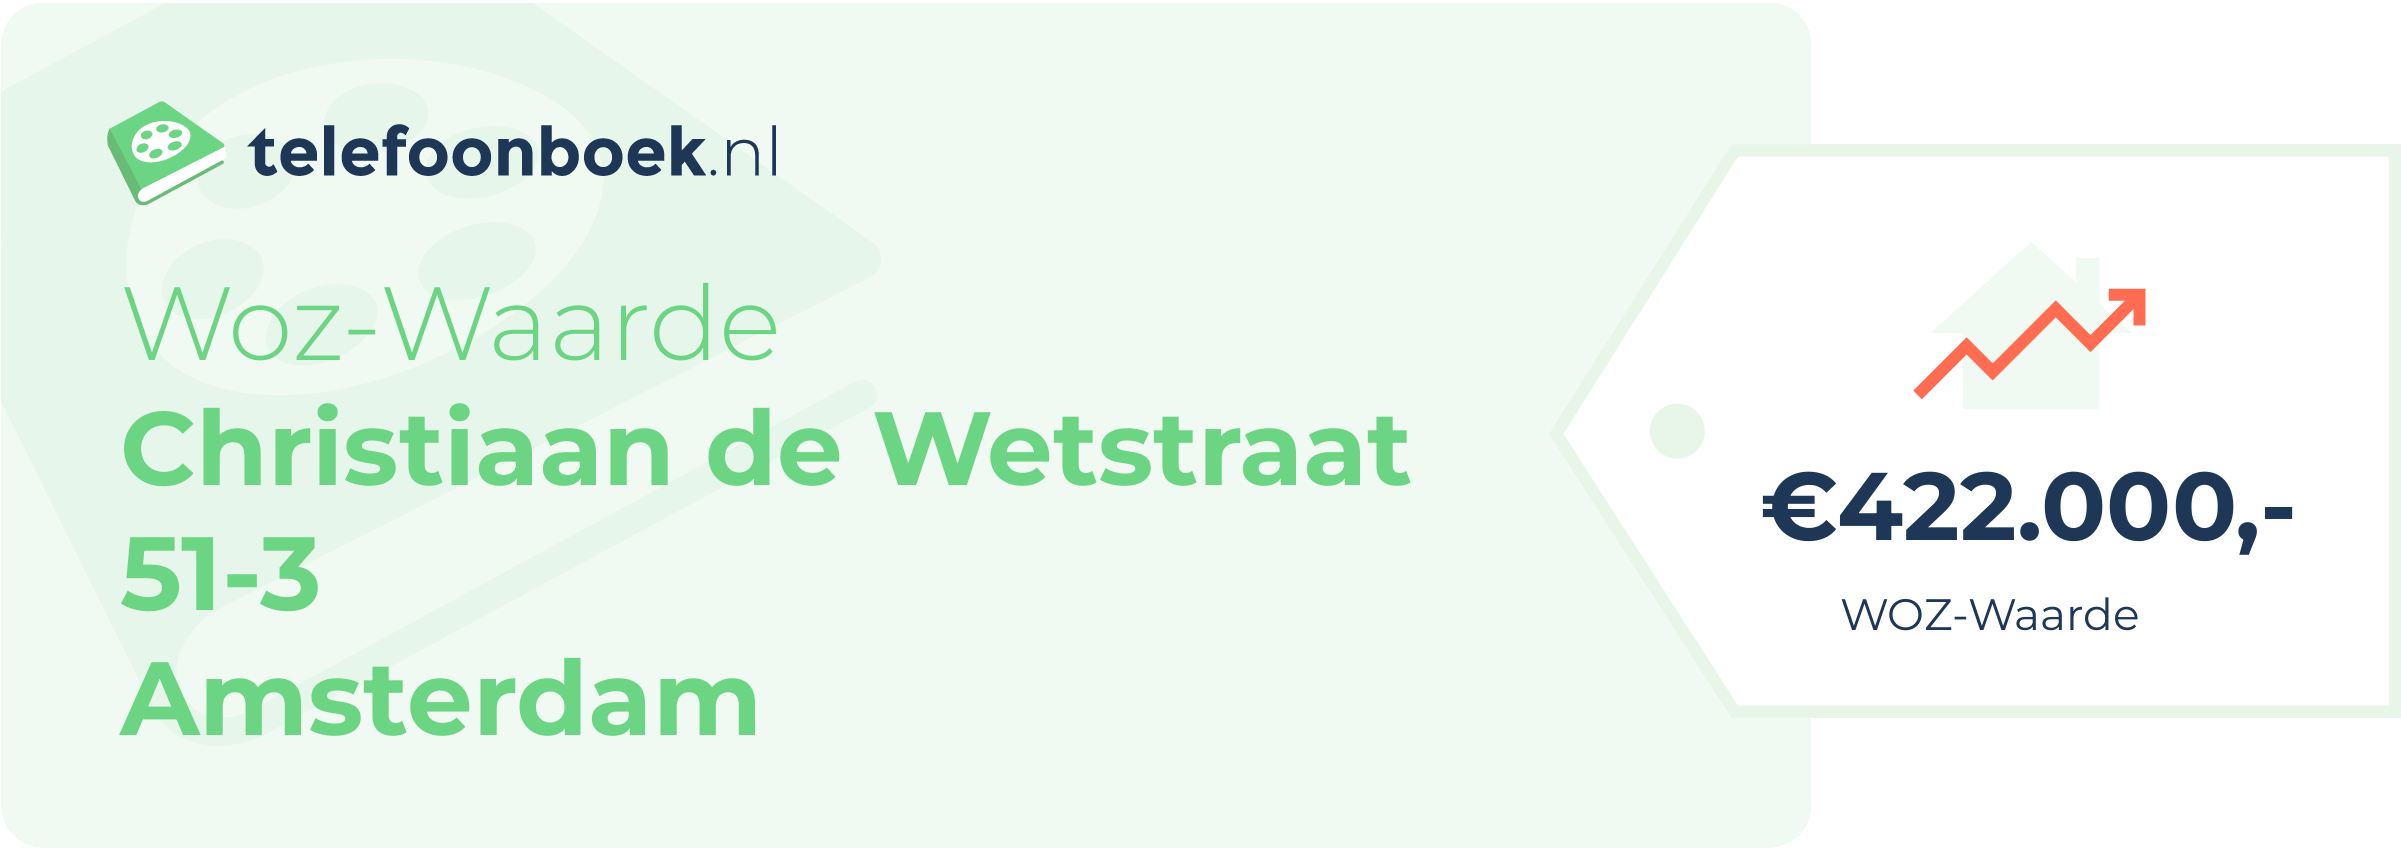 WOZ-waarde Christiaan De Wetstraat 51-3 Amsterdam